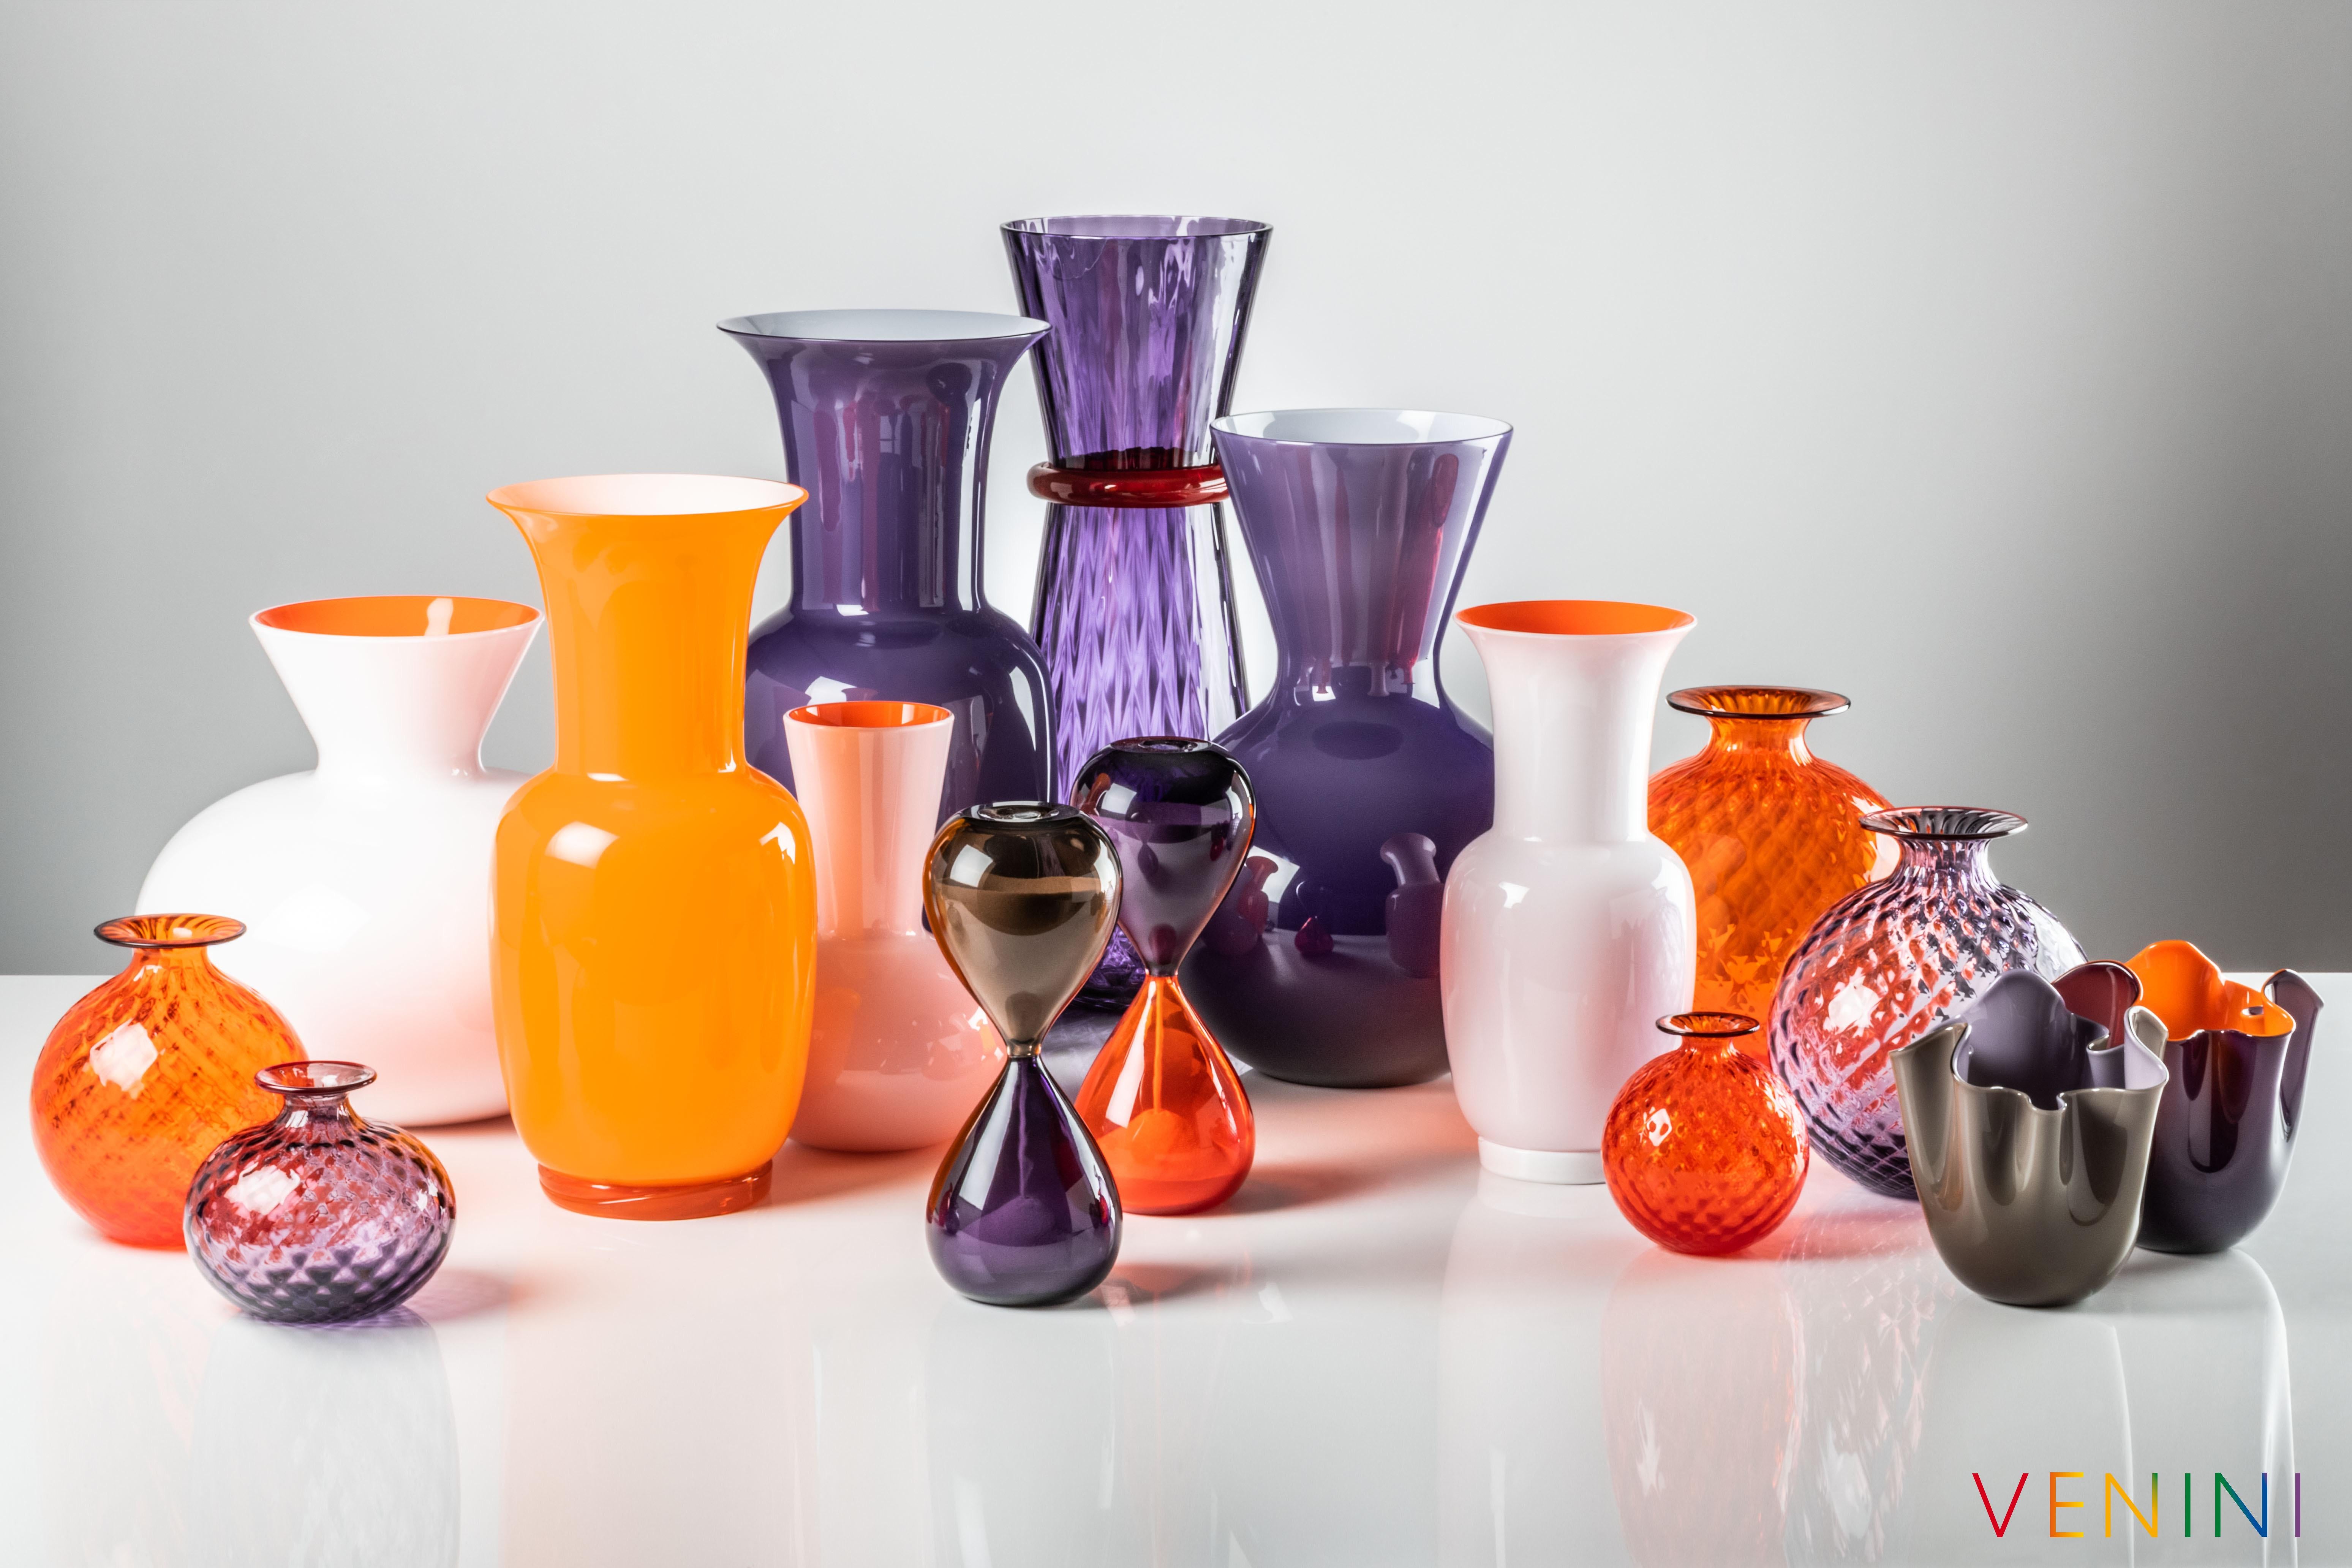 La série de vases en verre Idria, conçue et fabriquée par Venini, comprend trois vases de formes différentes. Utilisation intérieure uniquement.

Dimensions : Ø 26, H 36 cm.